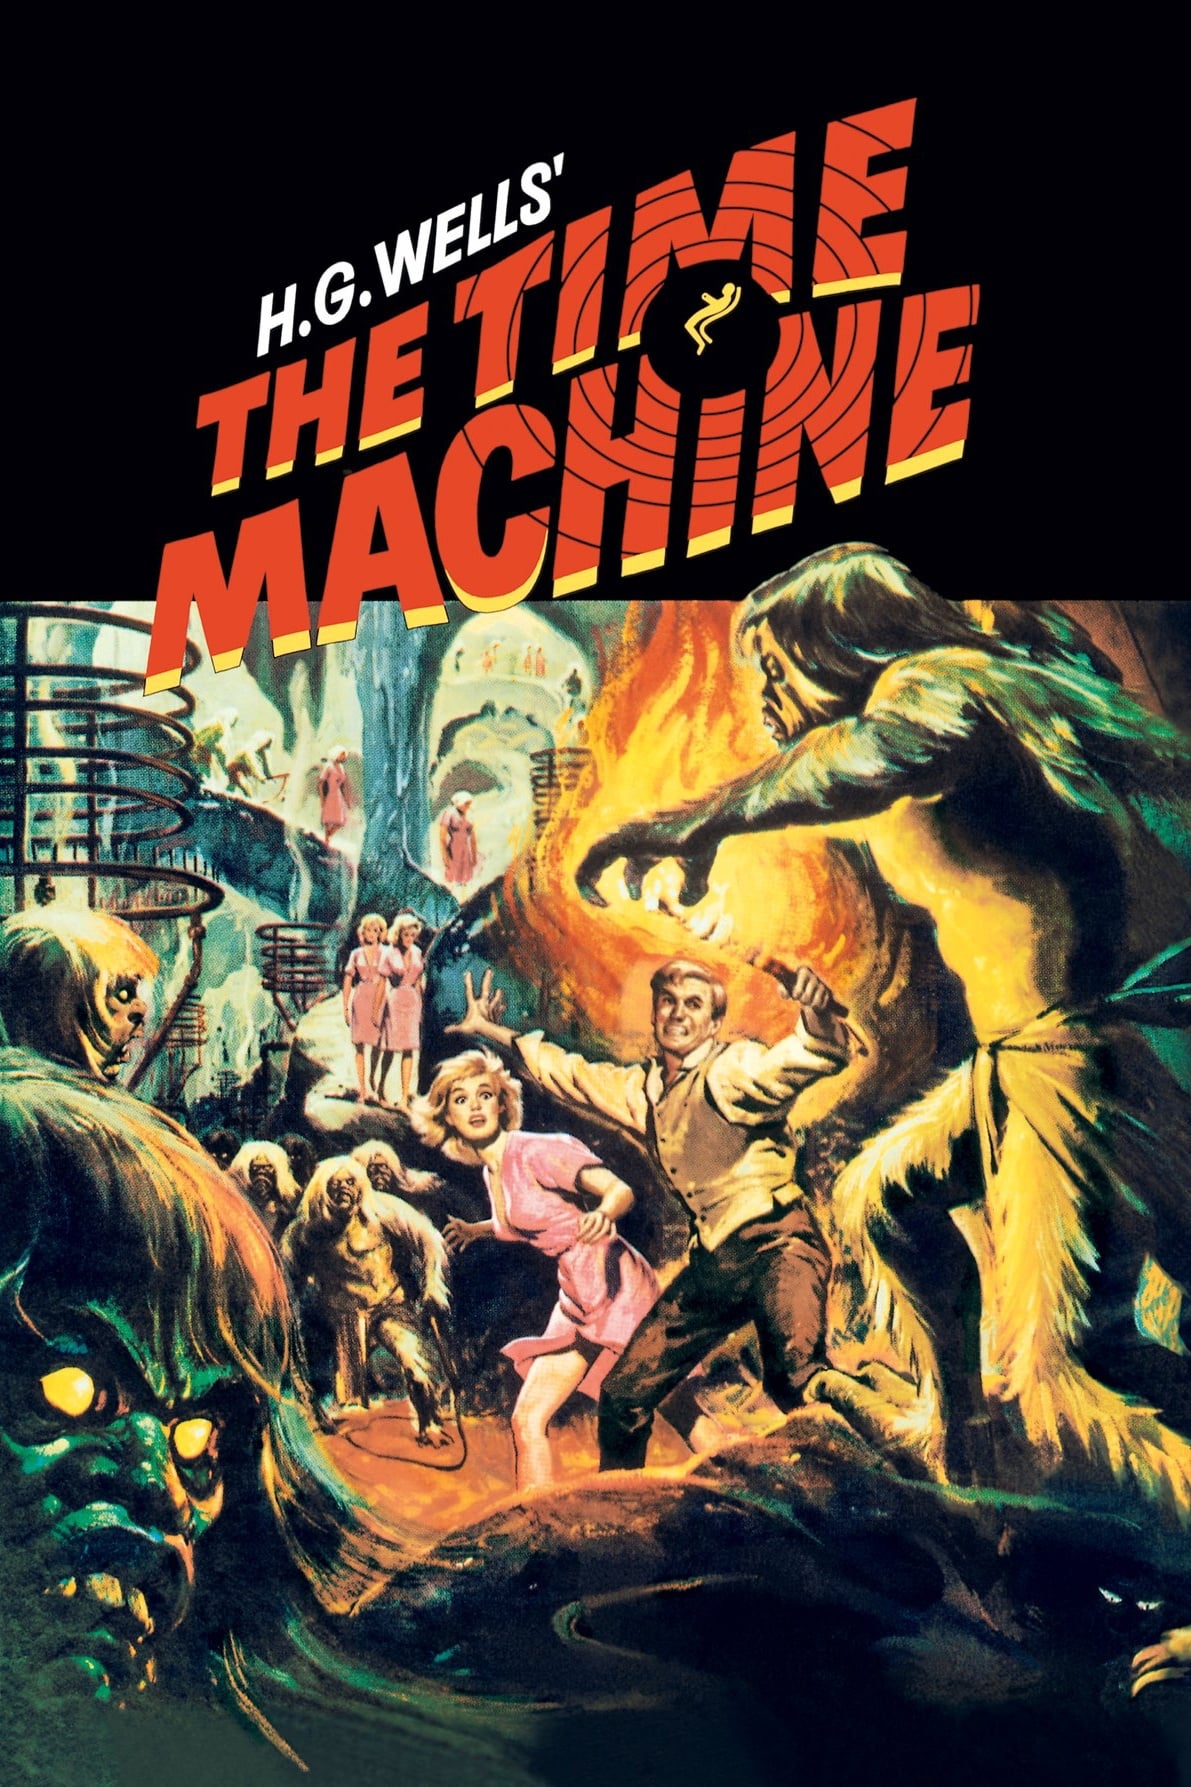 Die Zeitmaschine (1960)